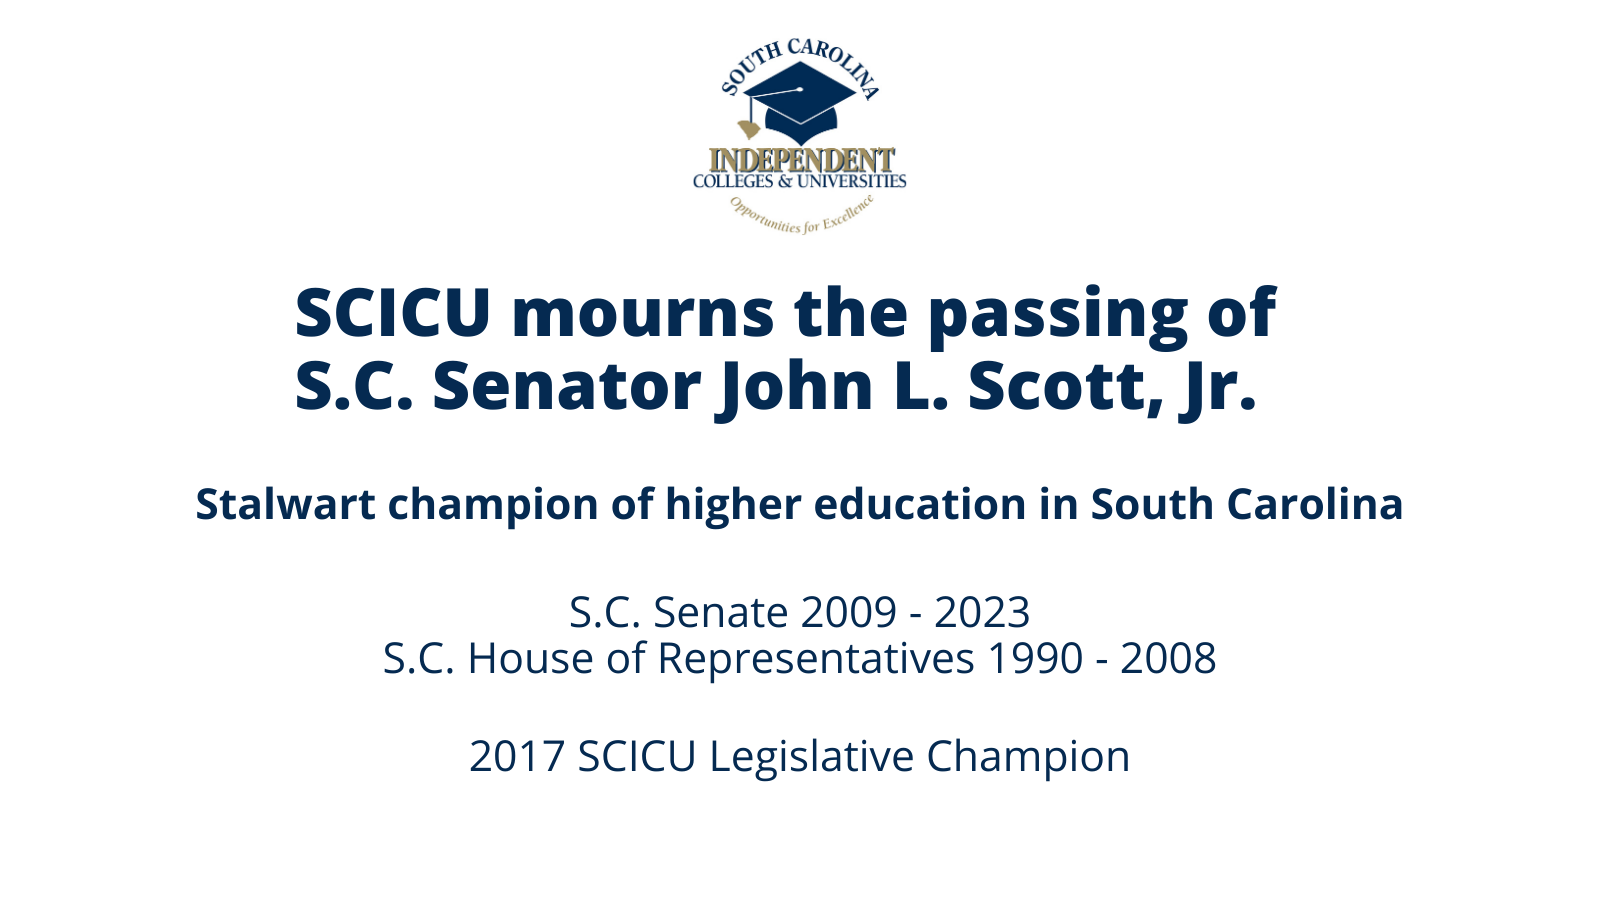 SCICU mourns passing of S.C. Sen. John L. Scott, Jr.